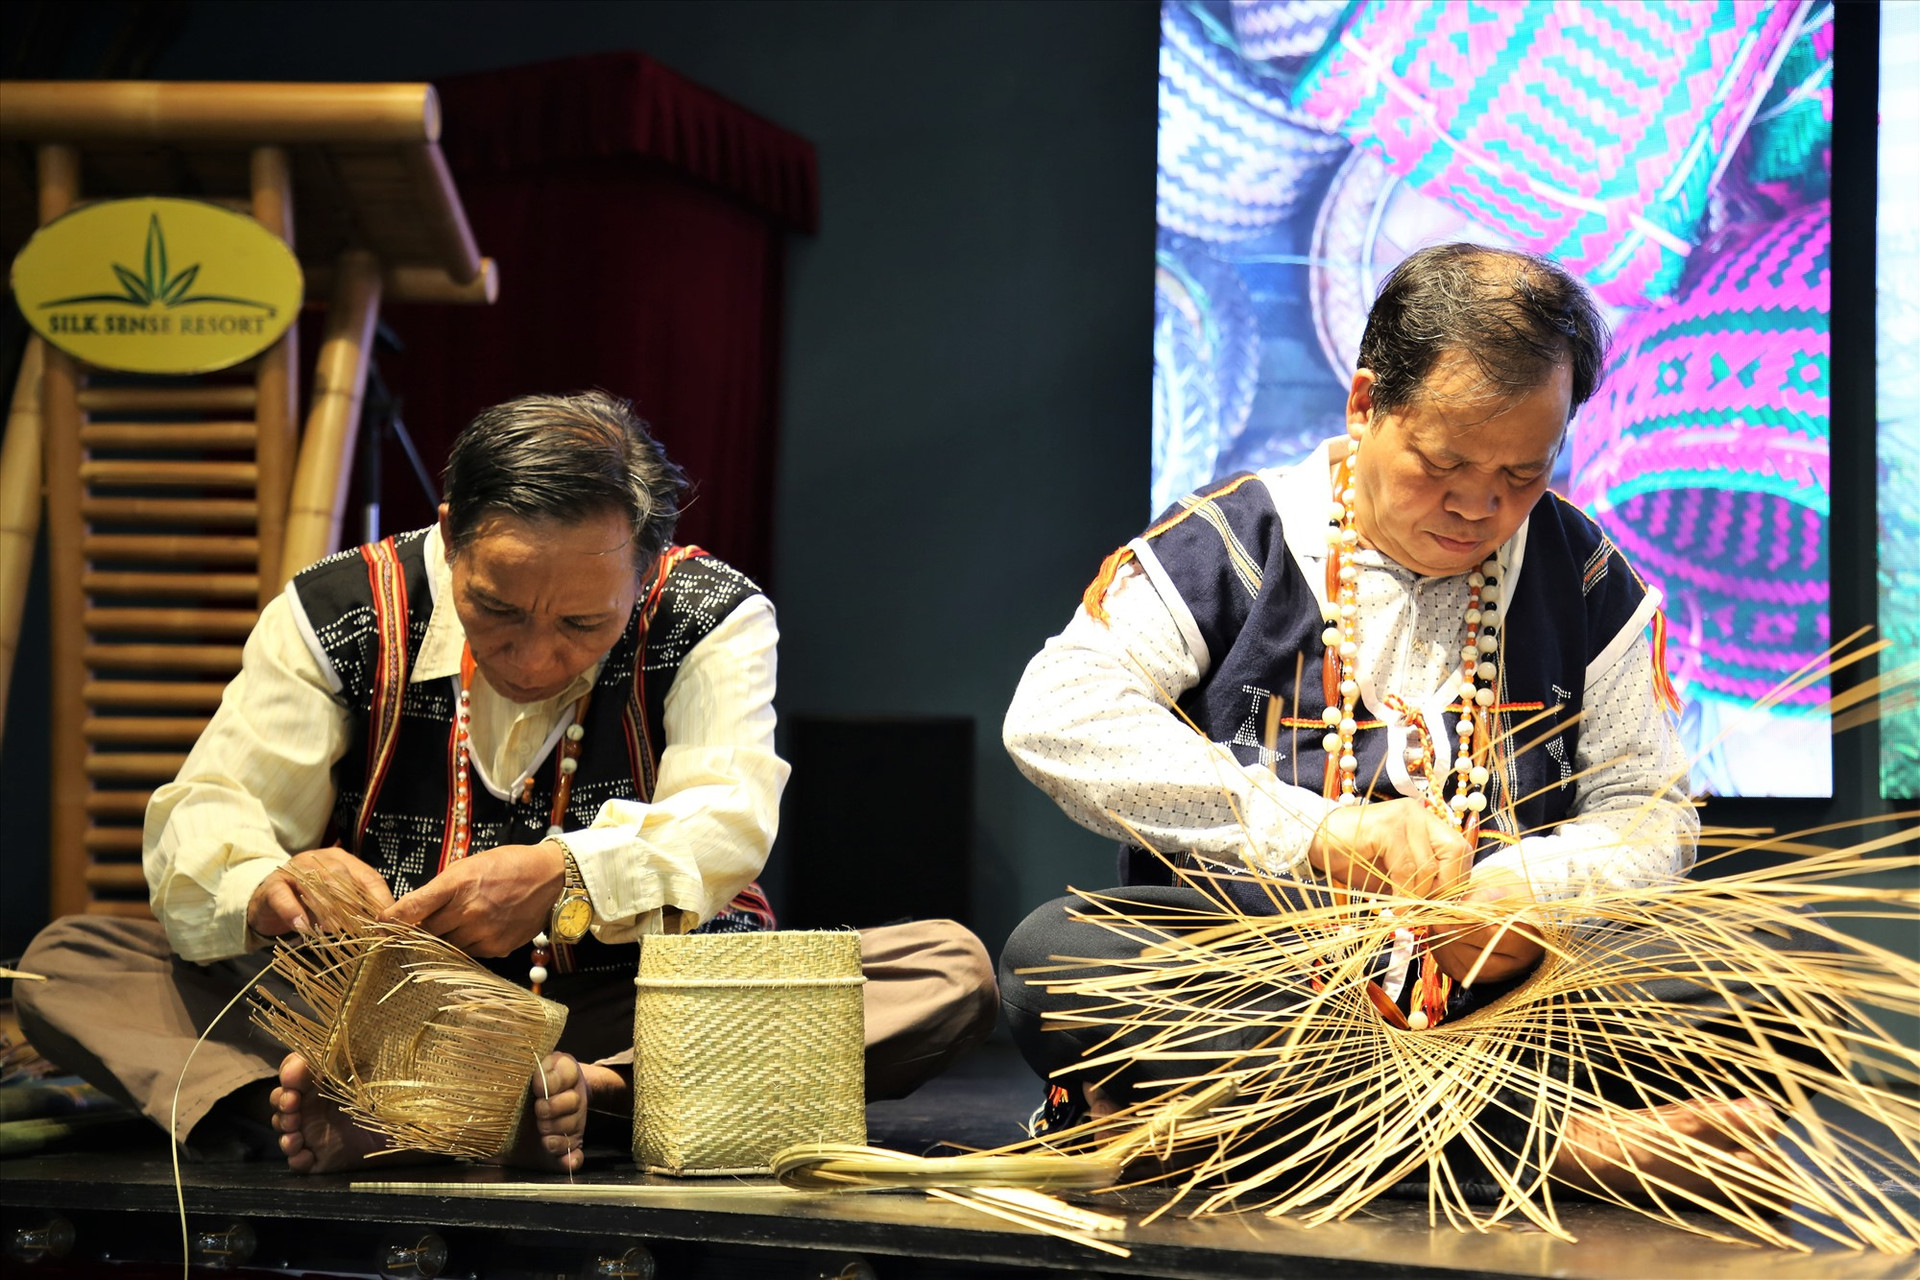 Các nghệ nhân Cơ Tu trình diễn nghệ thuật đan lát truyền thống. Ảnh: A.N